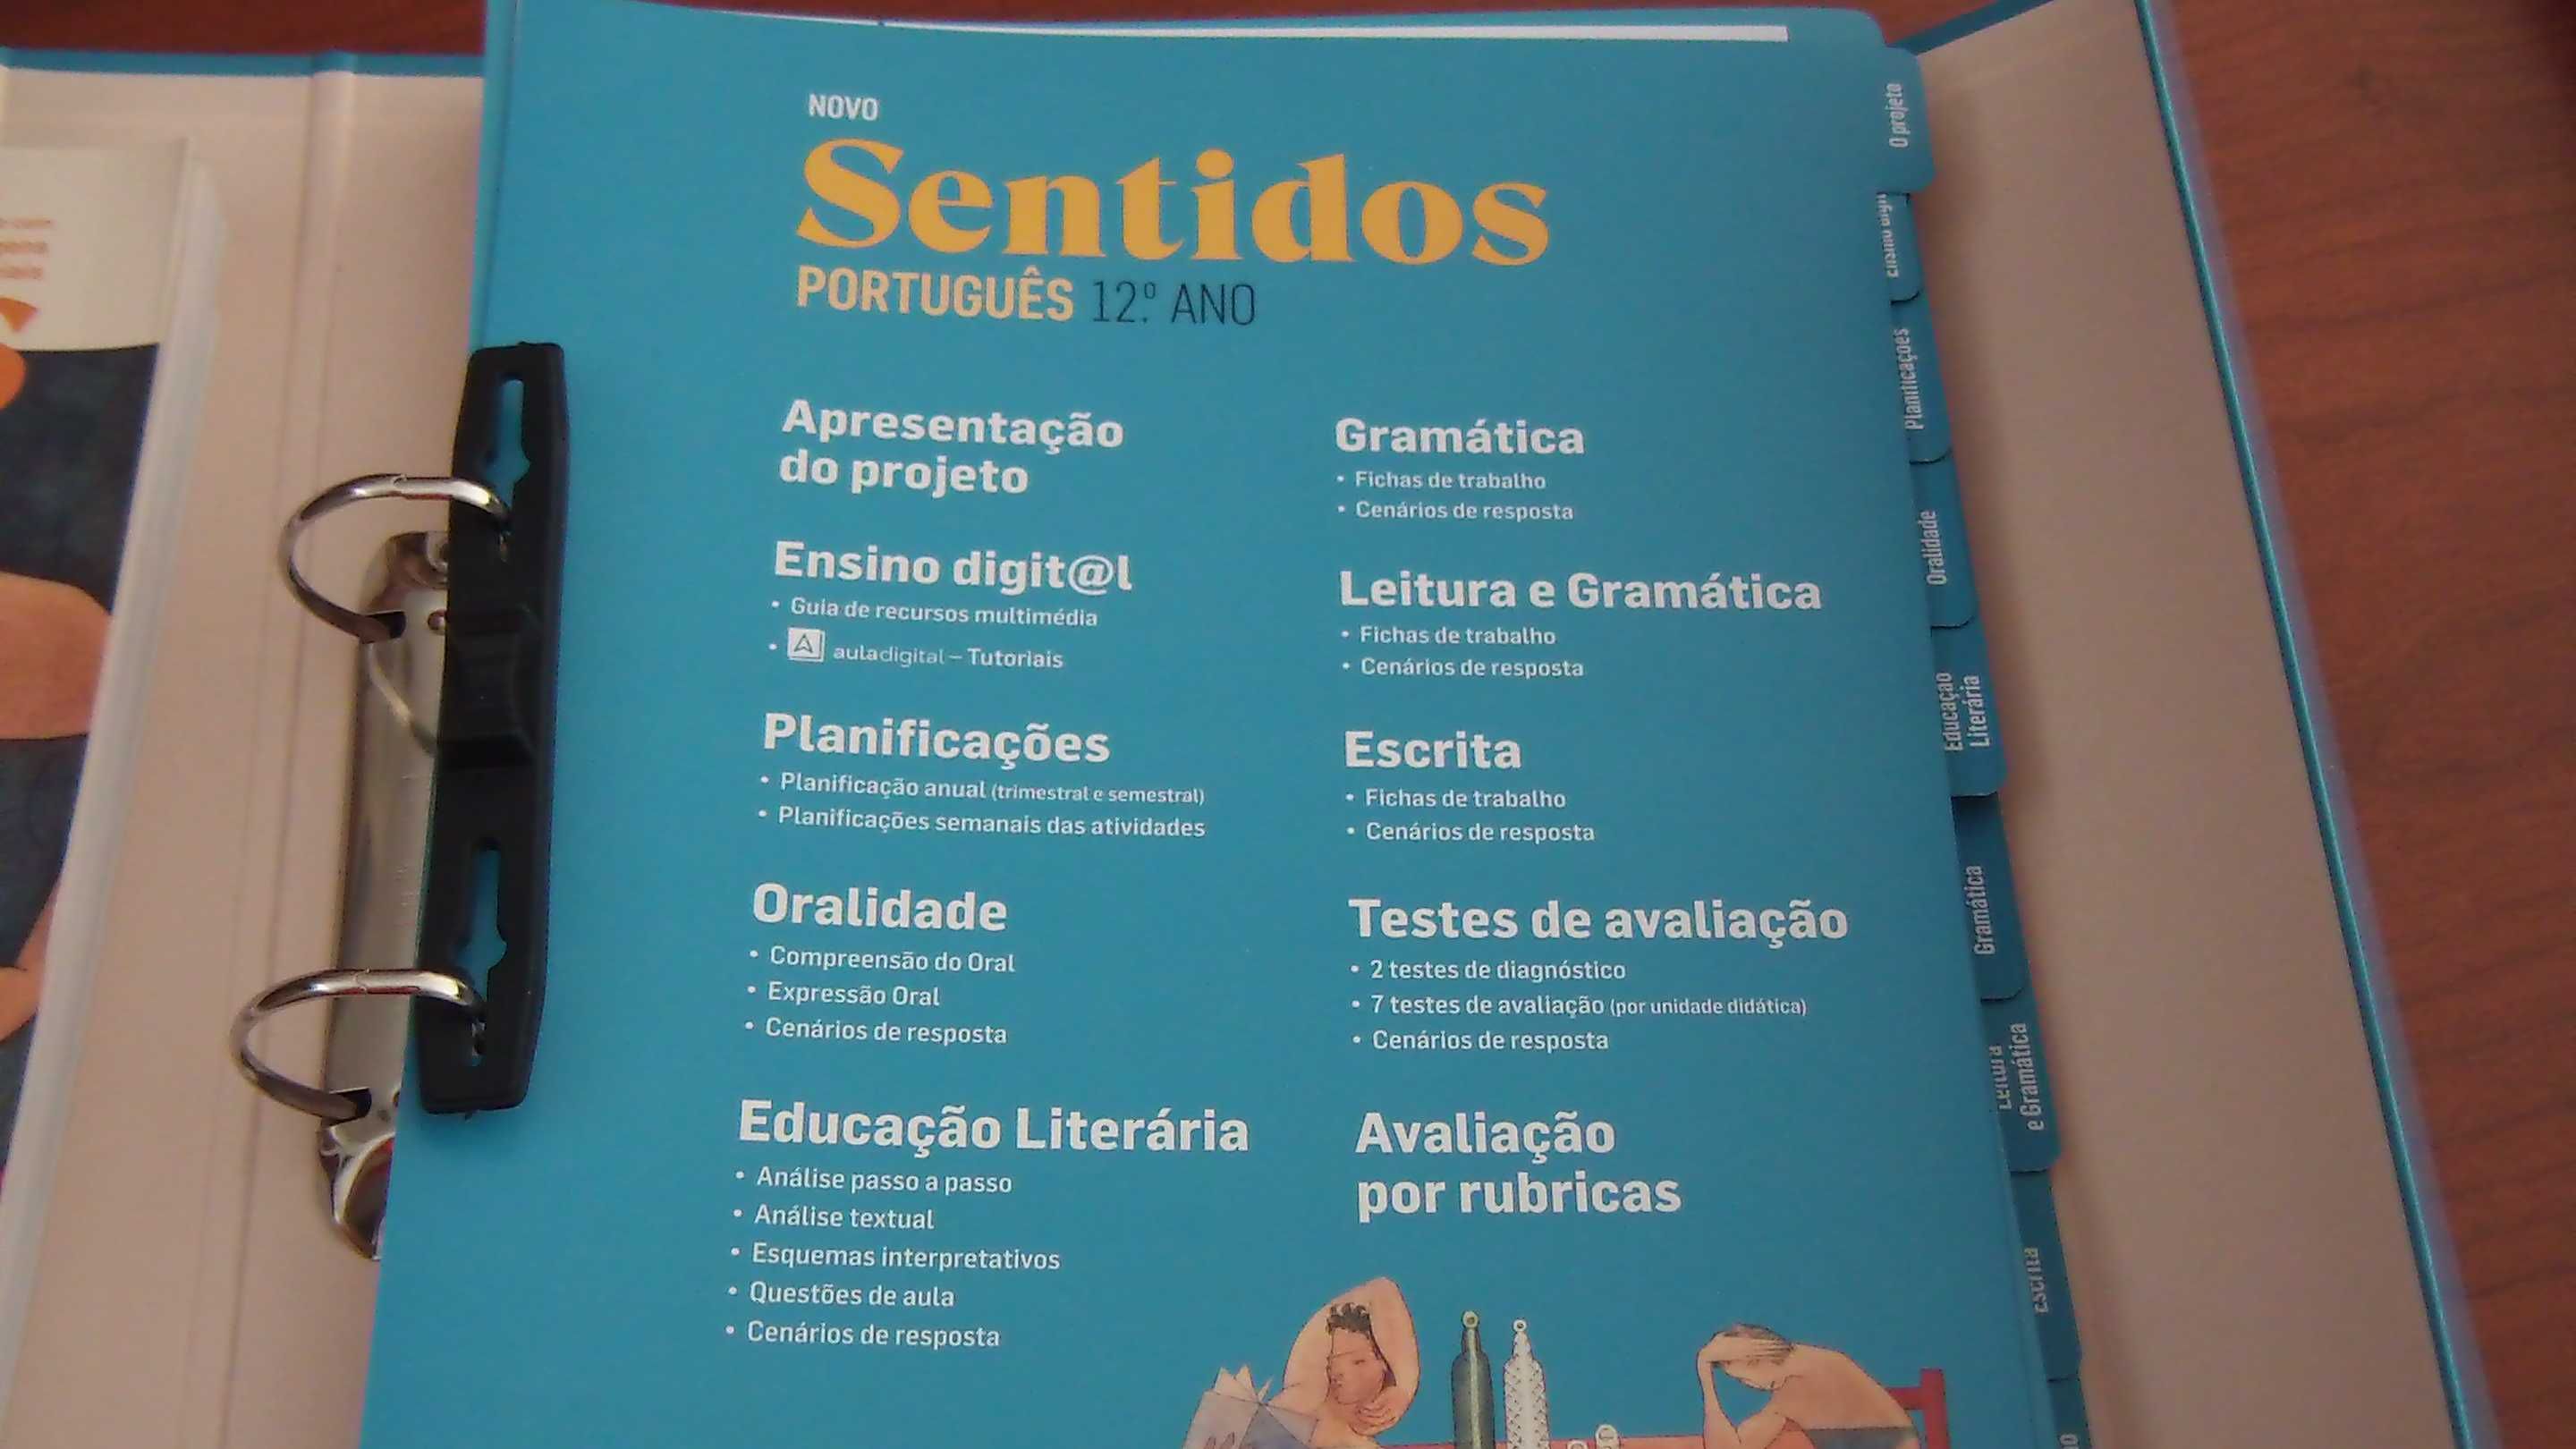 Sentidos 12 - Português 12.º ano ASA (Professor)